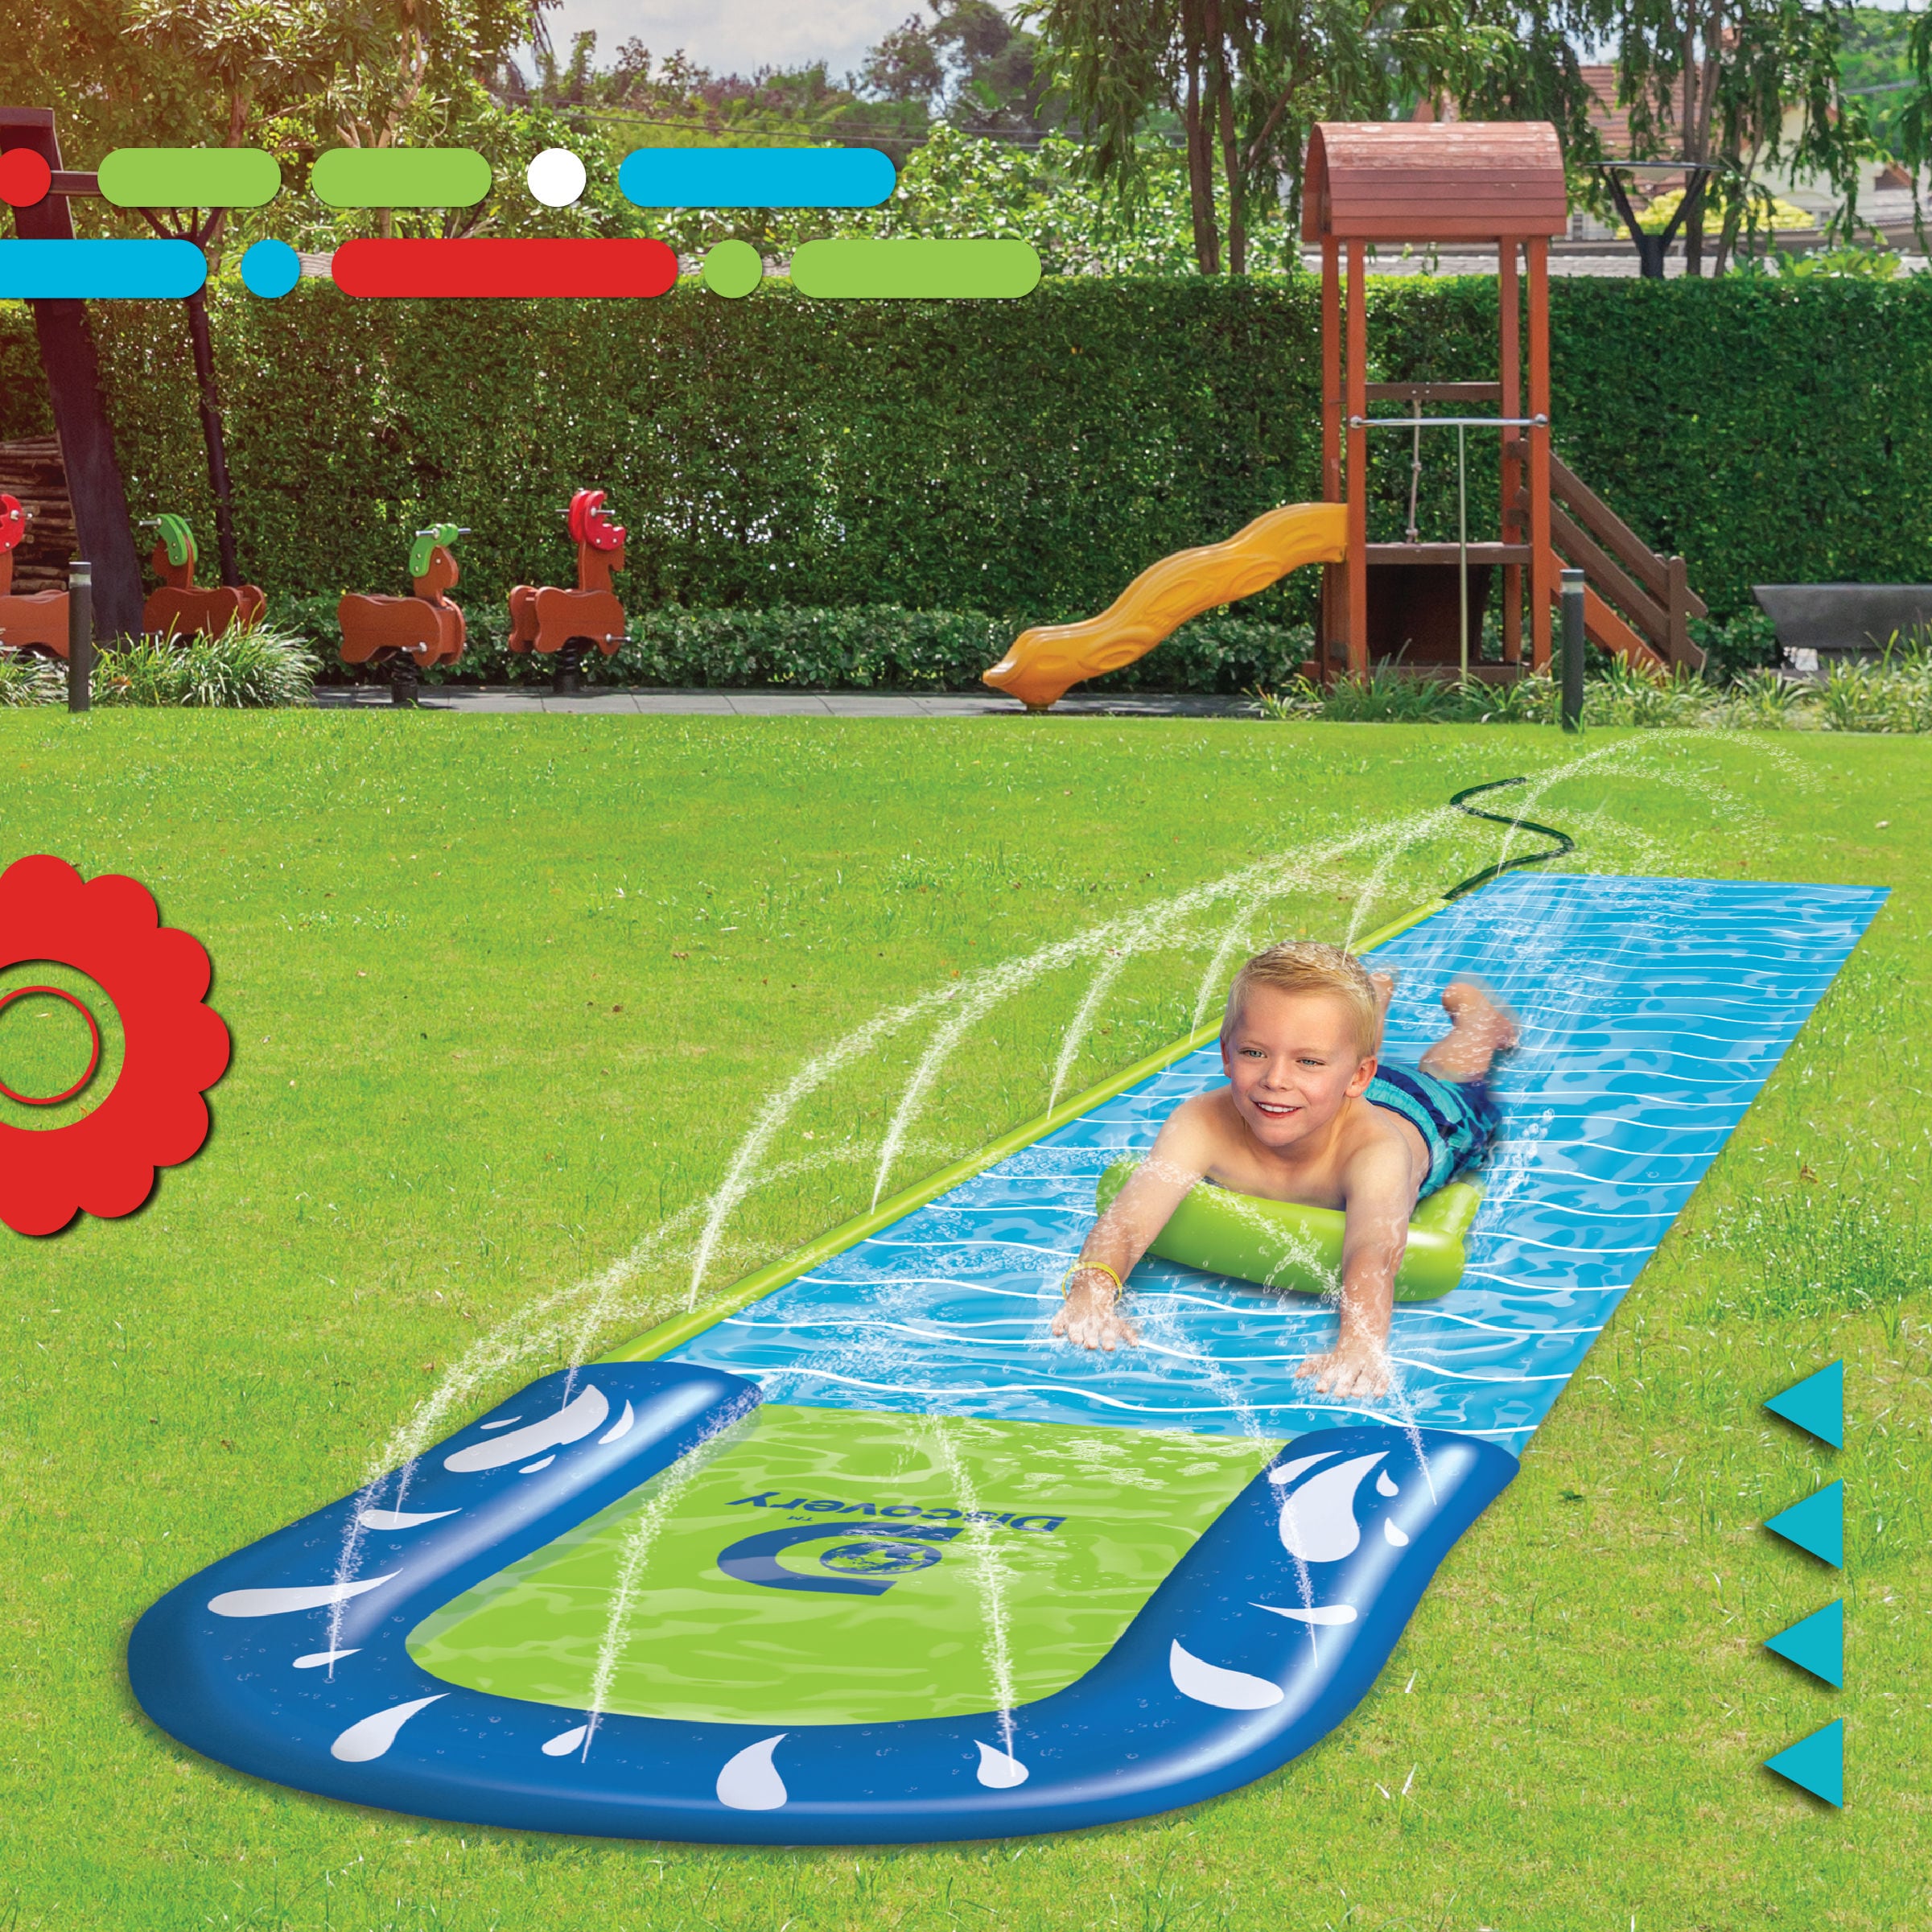 Wahu Super Slide, For Kids Age 5+